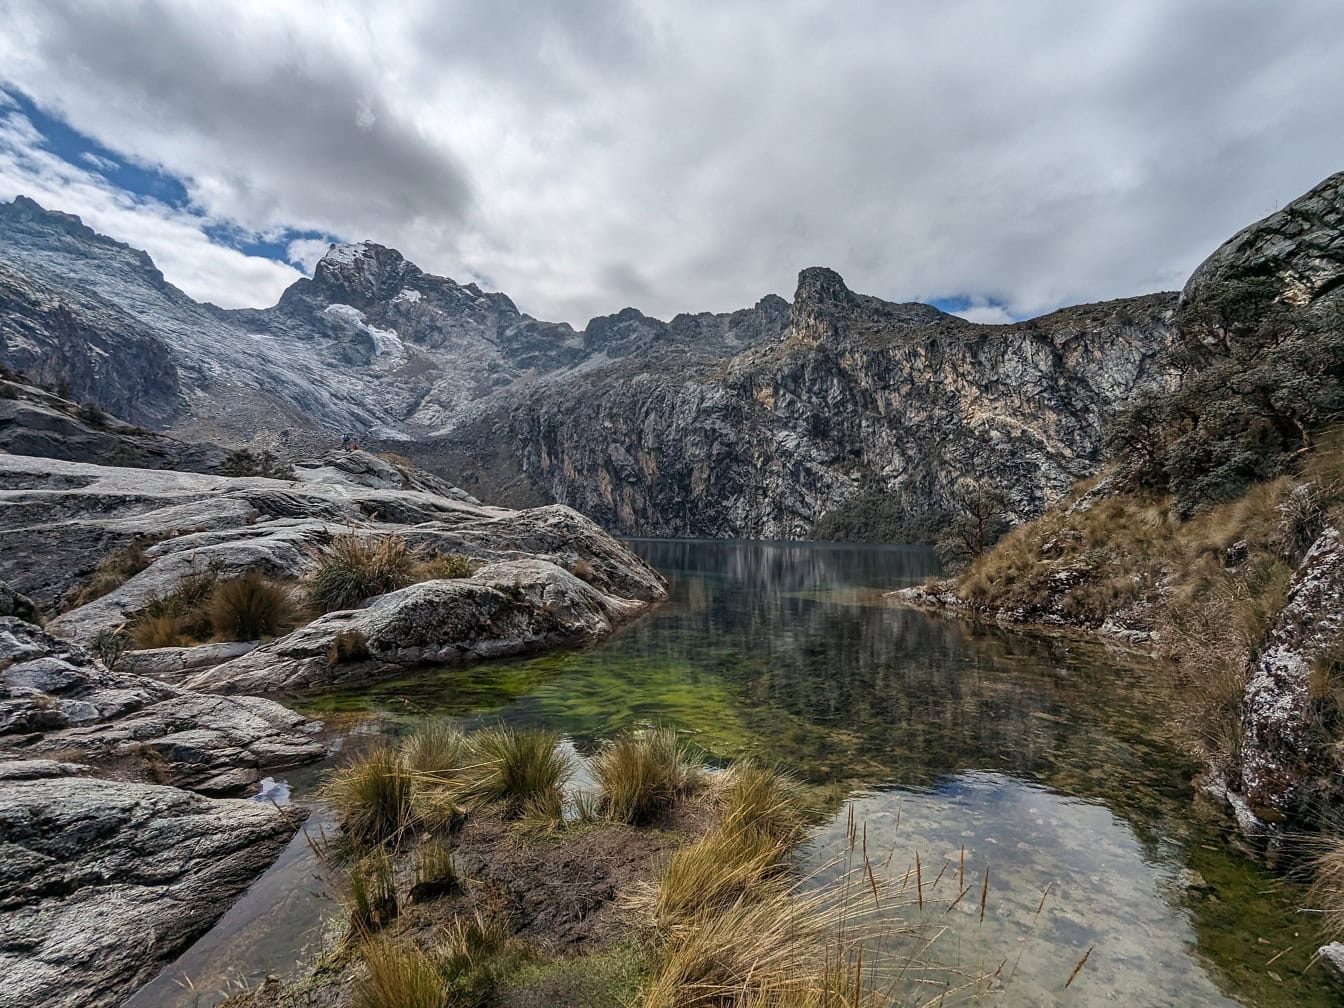 Τοπίο μιας λίμνης Churup και χιονισμένες βουνοκορφές σε φυσικό πάρκο στις Άνδεις κοντά στο Huaraz στο Περού, μια γραφική θέα της Λατινικής Αμερικής